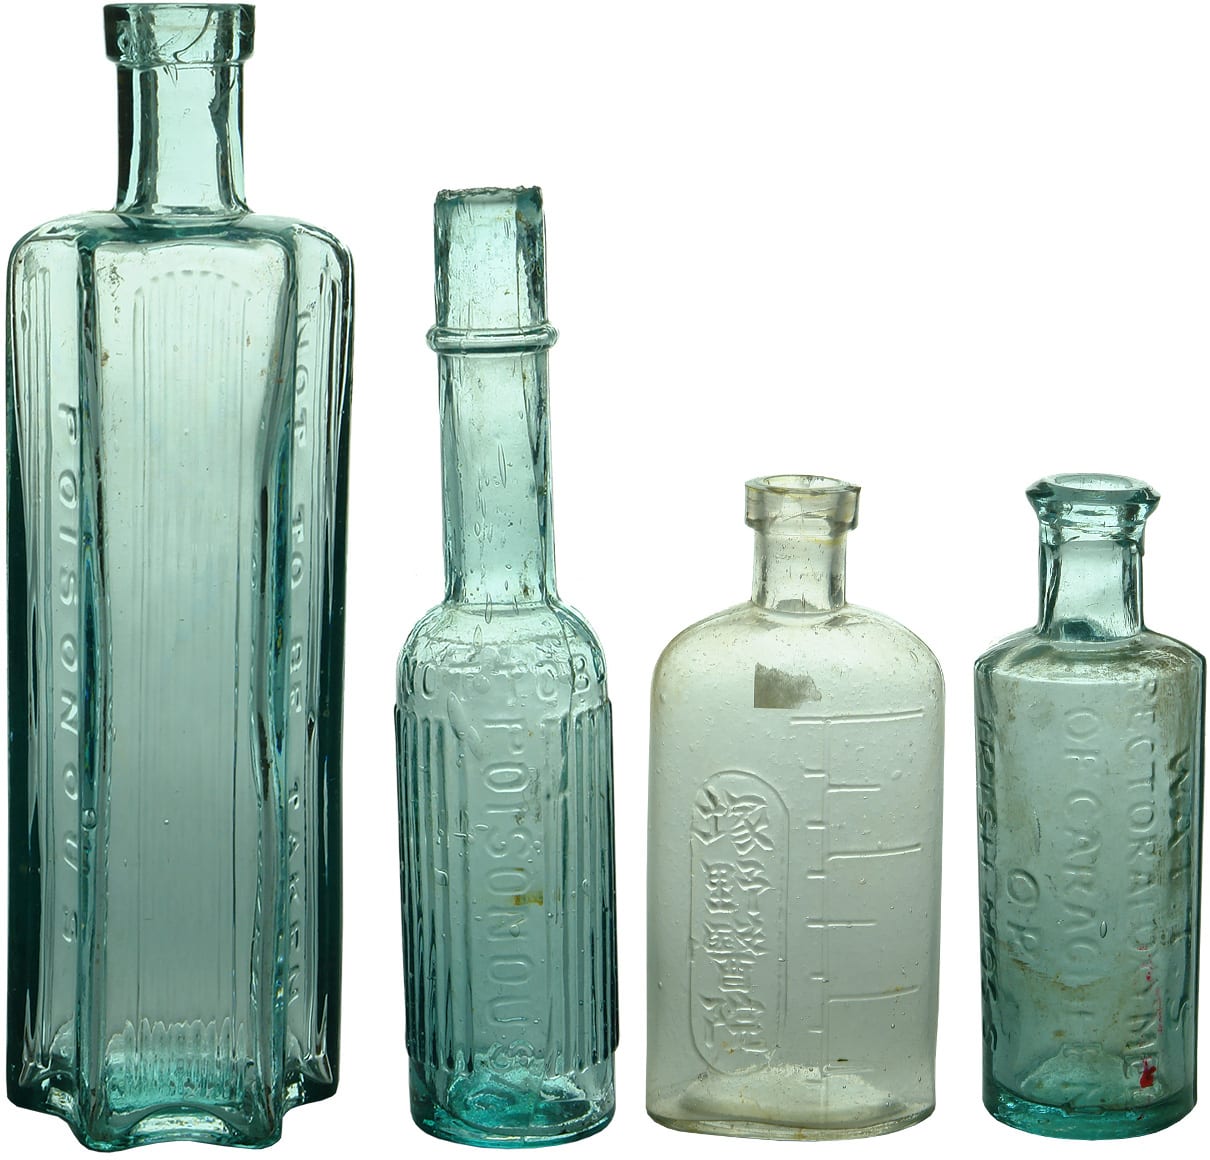 Antique Poison Medical Bottles